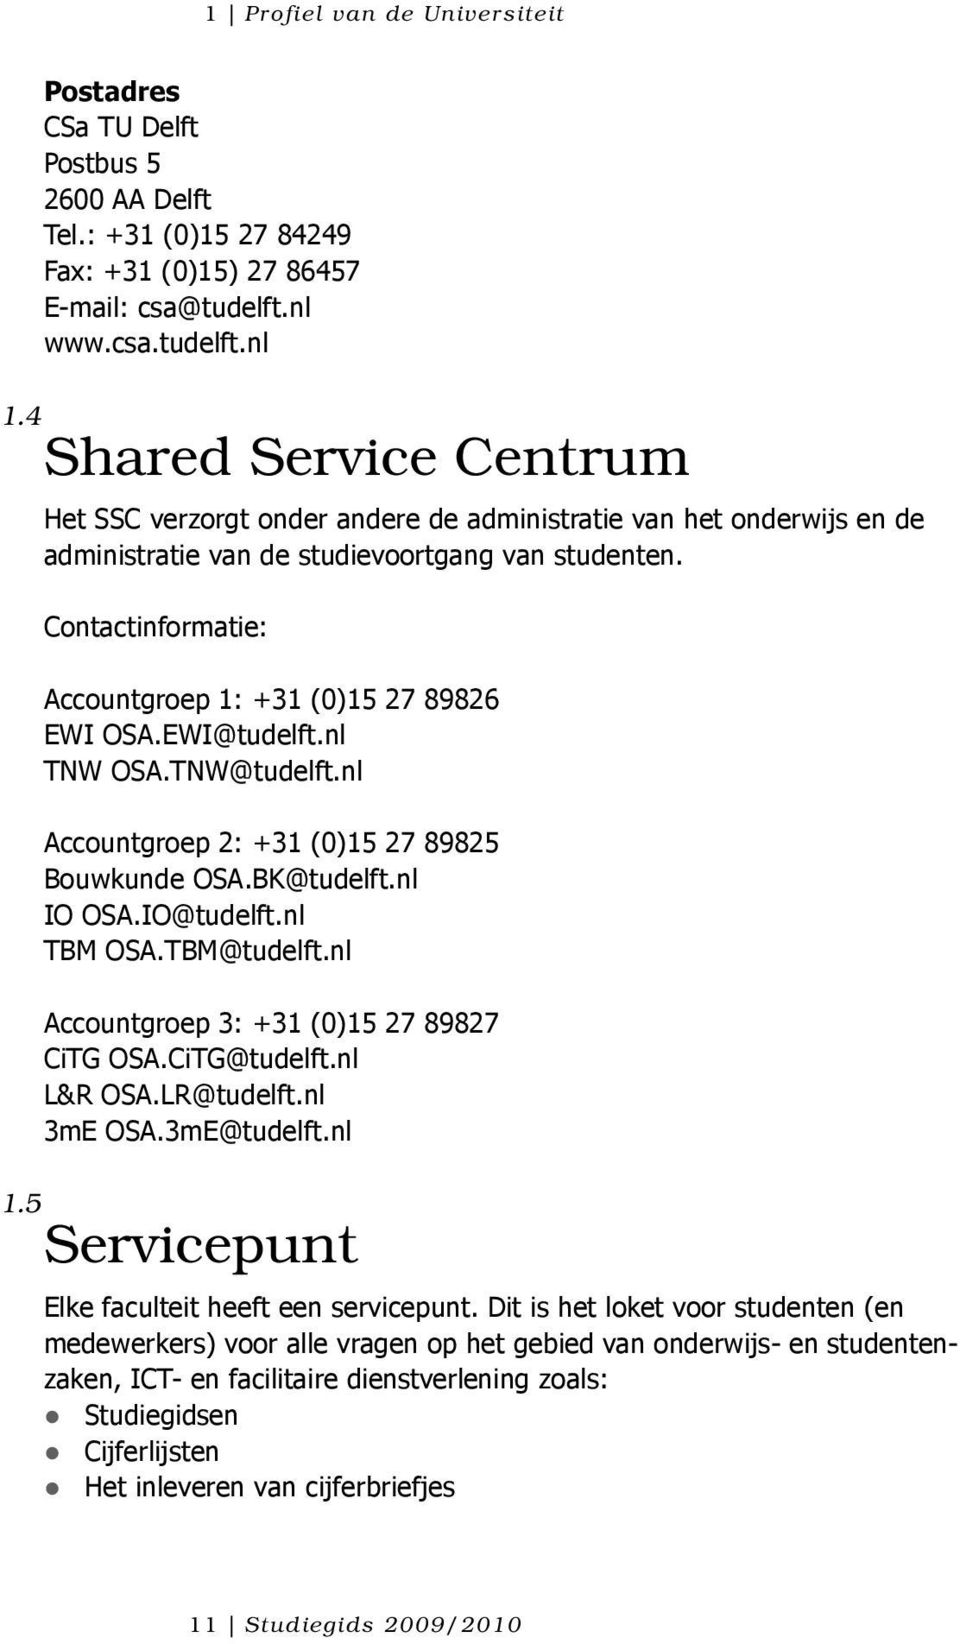 Contactinformatie: Accountgroep 1: +31 (0)15 27 89826 EWI OSA.EWI@tudelft.nl TNW OSA.TNW@tudelft.nl Accountgroep 2: +31 (0)15 27 89825 Bouwkunde OSA.BK@tudelft.nl IO OSA.IO@tudelft.nl TBM OSA.